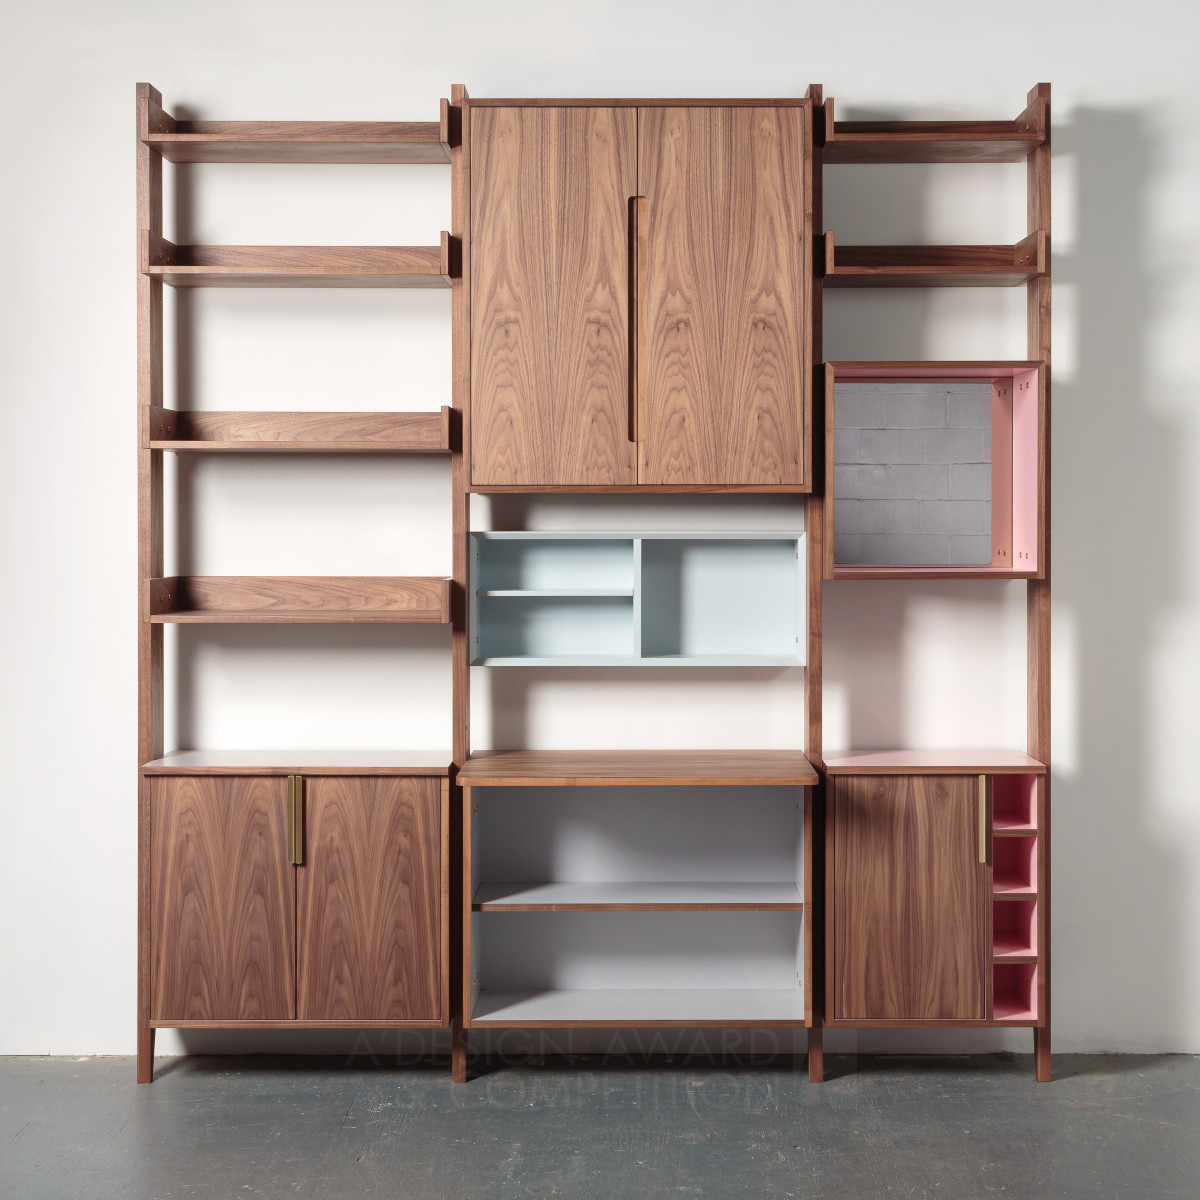 Matt Elton Interiors and functional furniture